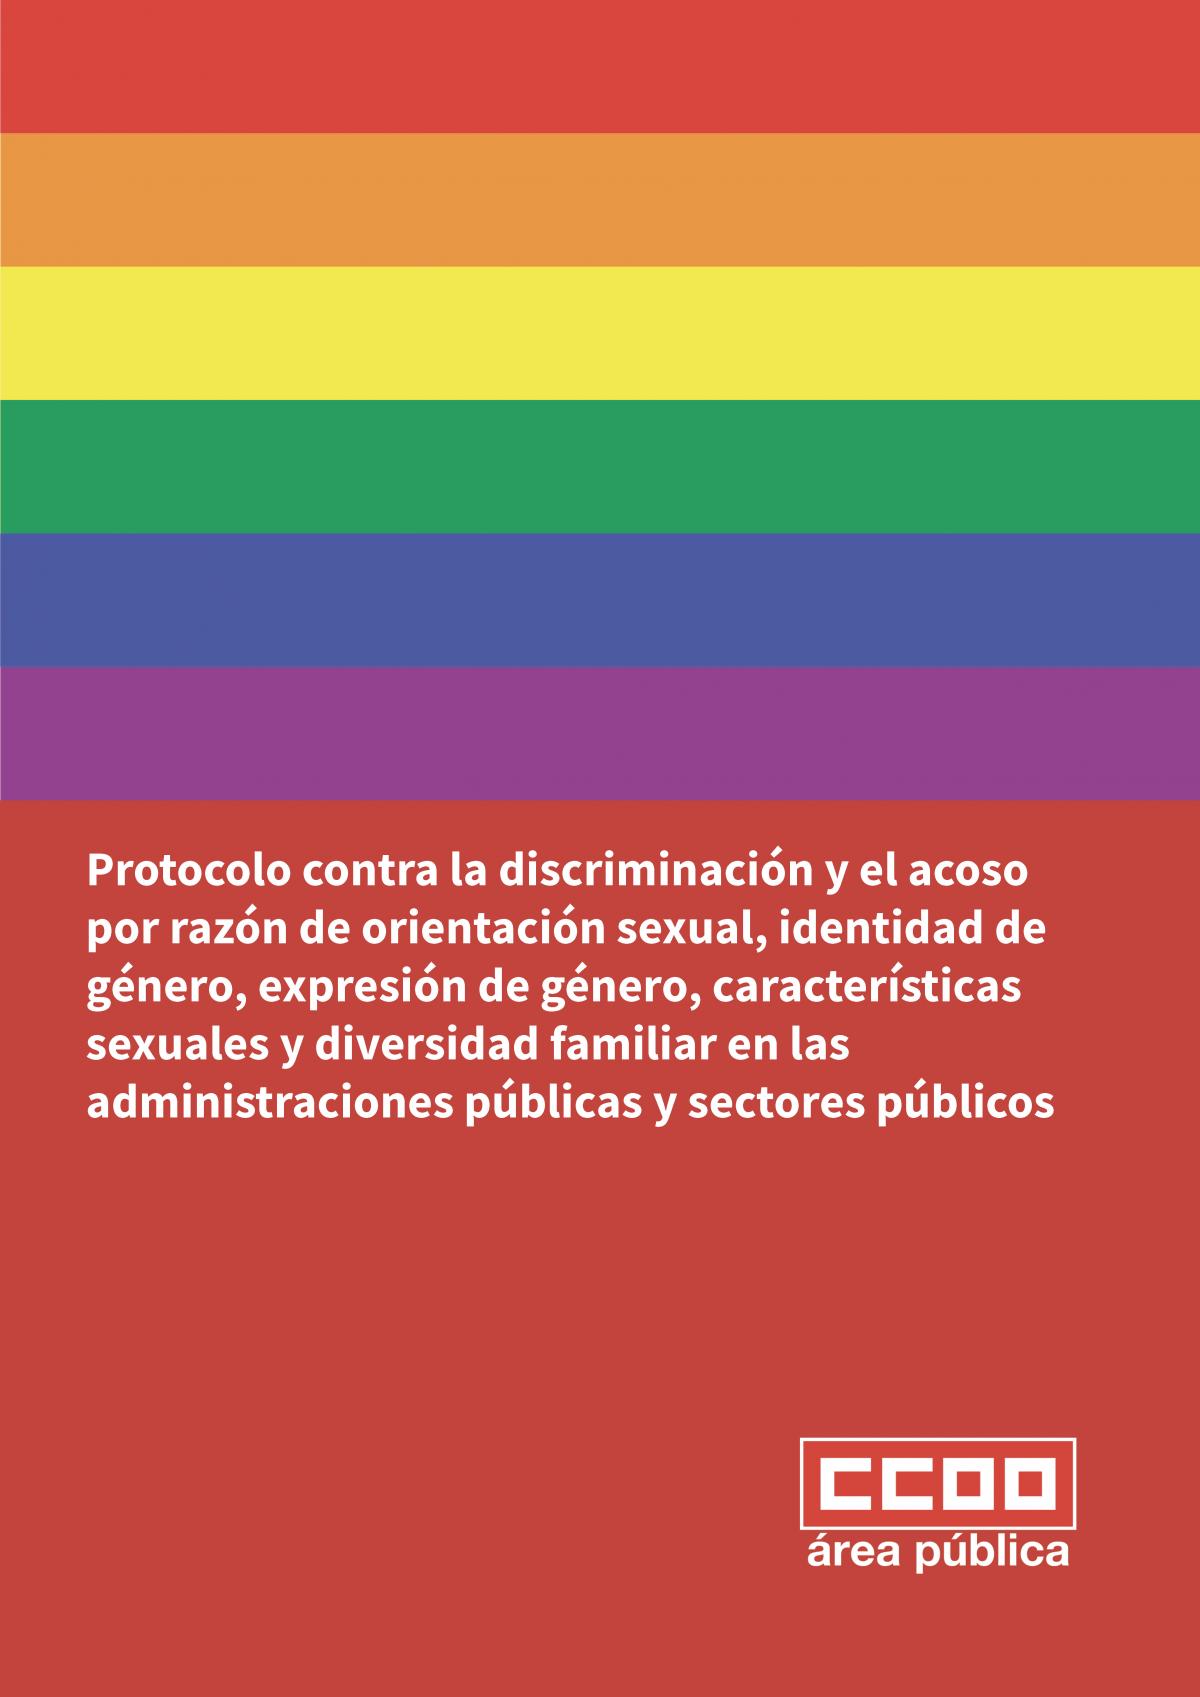 CCOO presenta un protocolo para erradicar la discriminacin y el acoso a las personas LGTBI+ y a la diversidad familiar en las Administraciones Pblicas y Sectores Pblicos